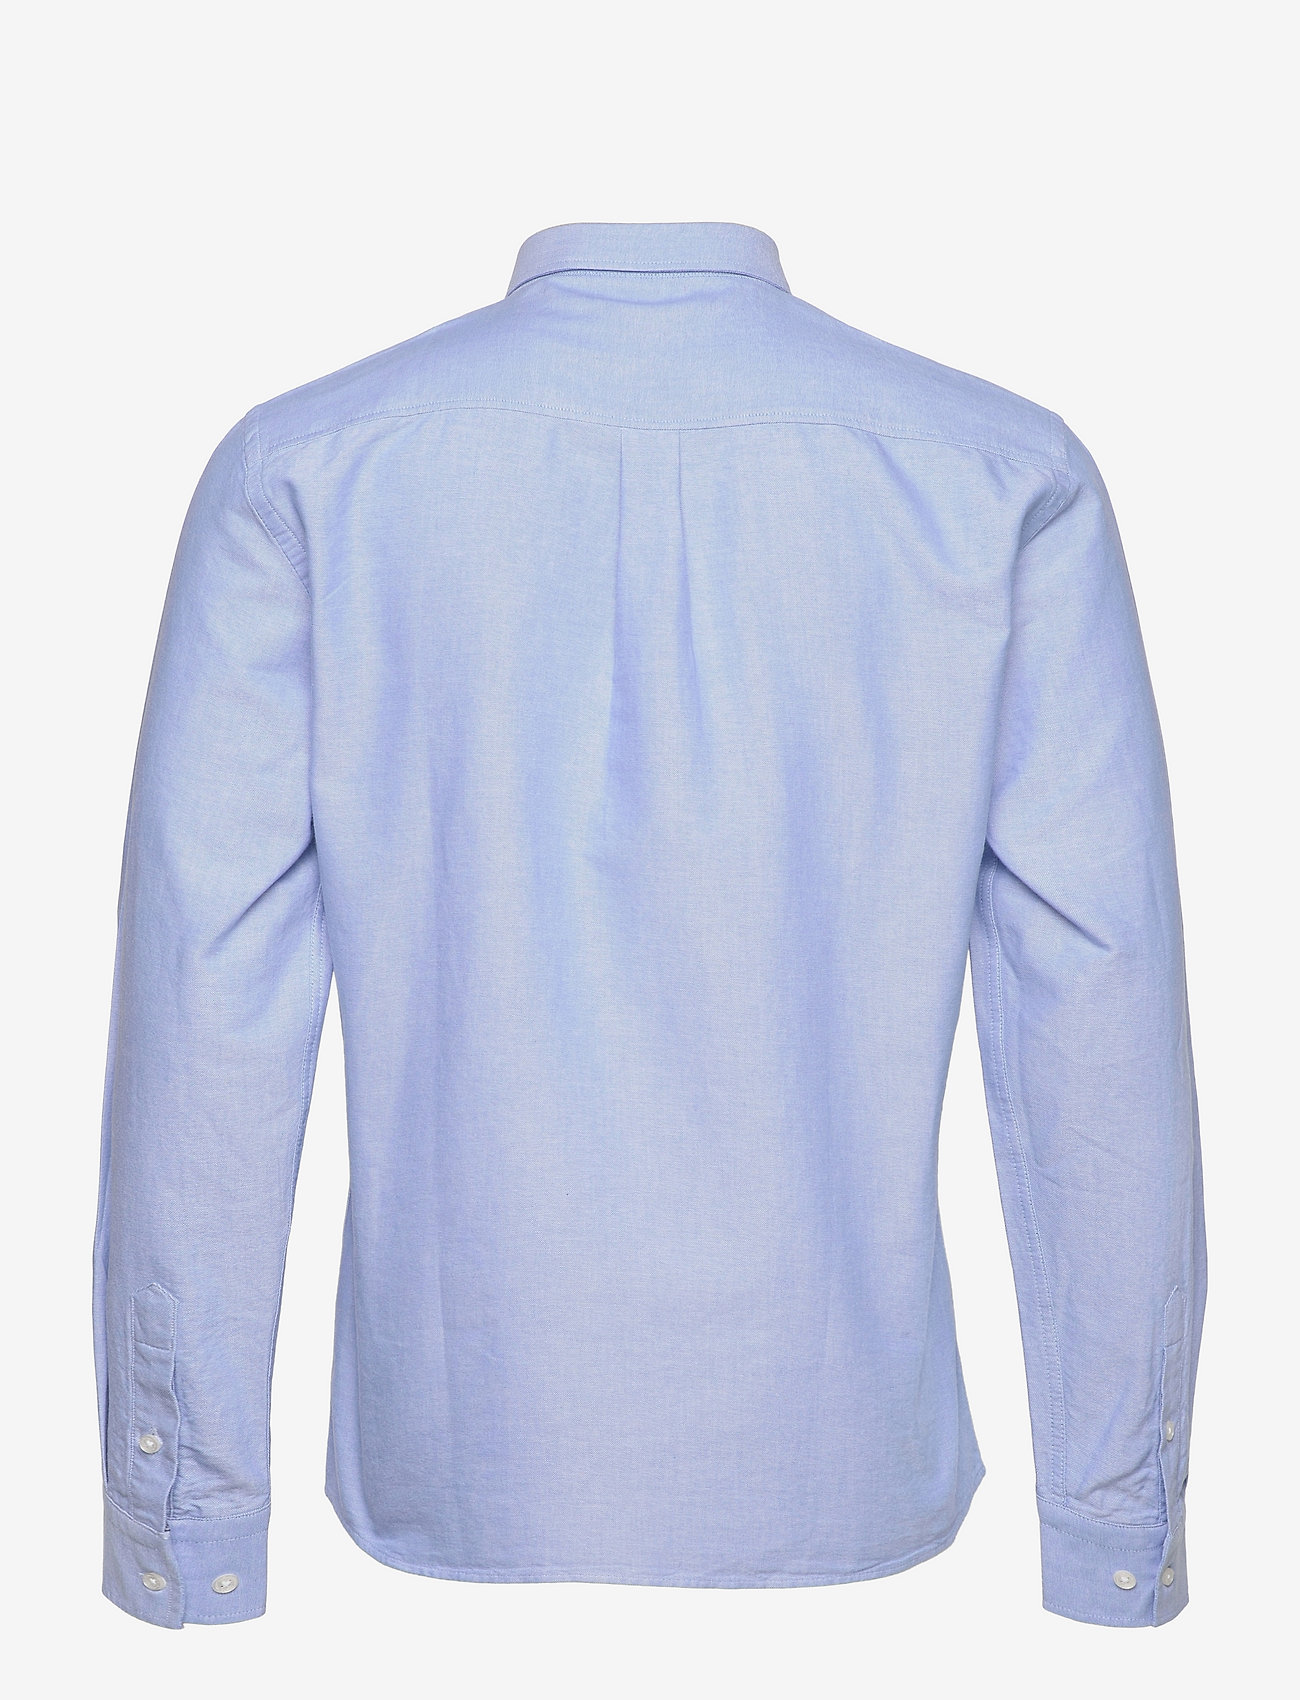 Armor Lux - Oxford shirt - oxford-hemden - light blue - 1